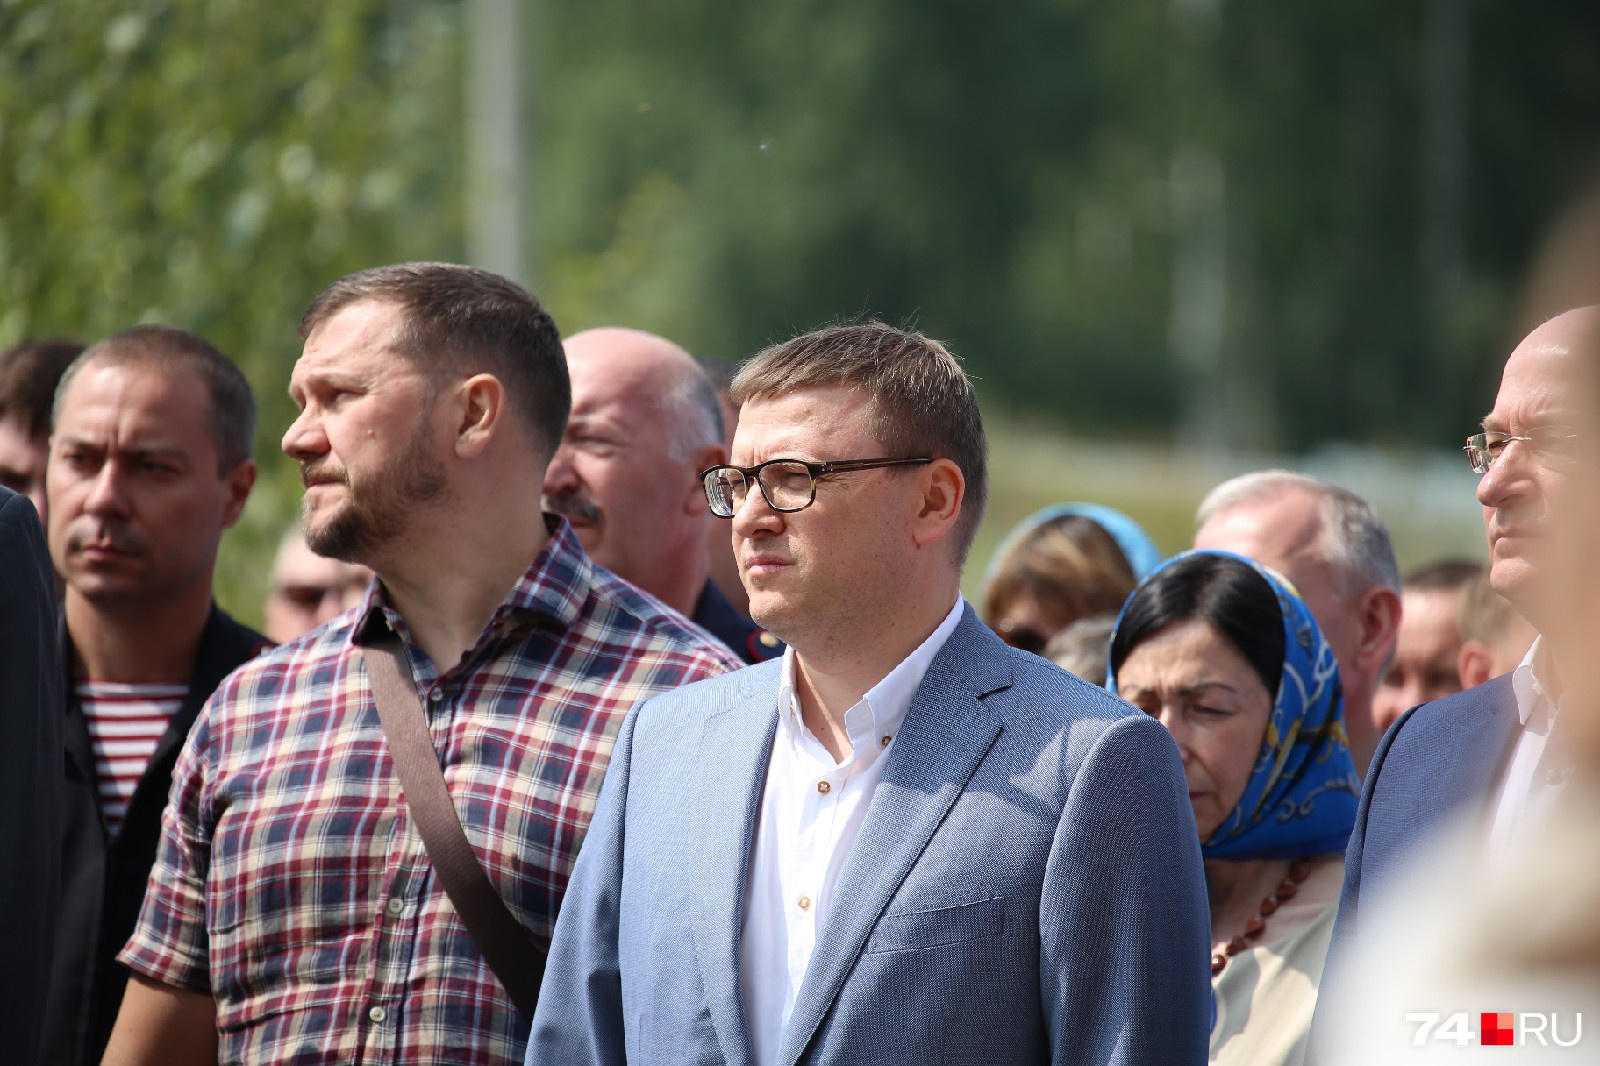 Присутствовали там также врио губернатора Алексей Текслер, депутаты Заксобрания и врио главы Челябинска Наталья Котова (сзади)